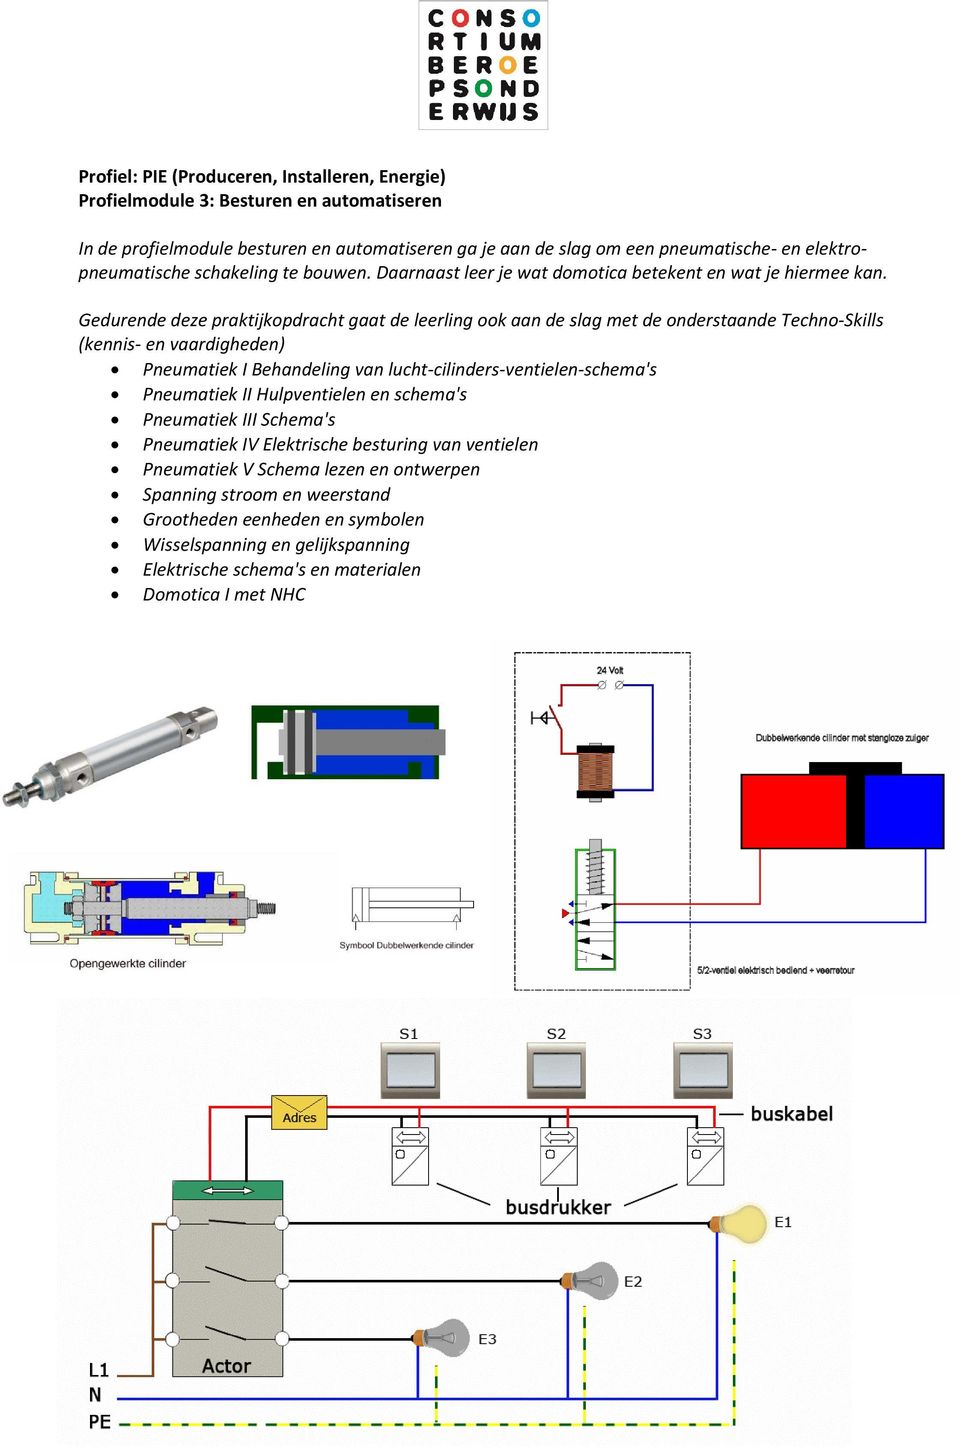 Pneumatiek I Behandeling van lucht-cilinders-ventielen-schema's Pneumatiek II Hulpventielen en schema's Pneumatiek III Schema's Pneumatiek IV